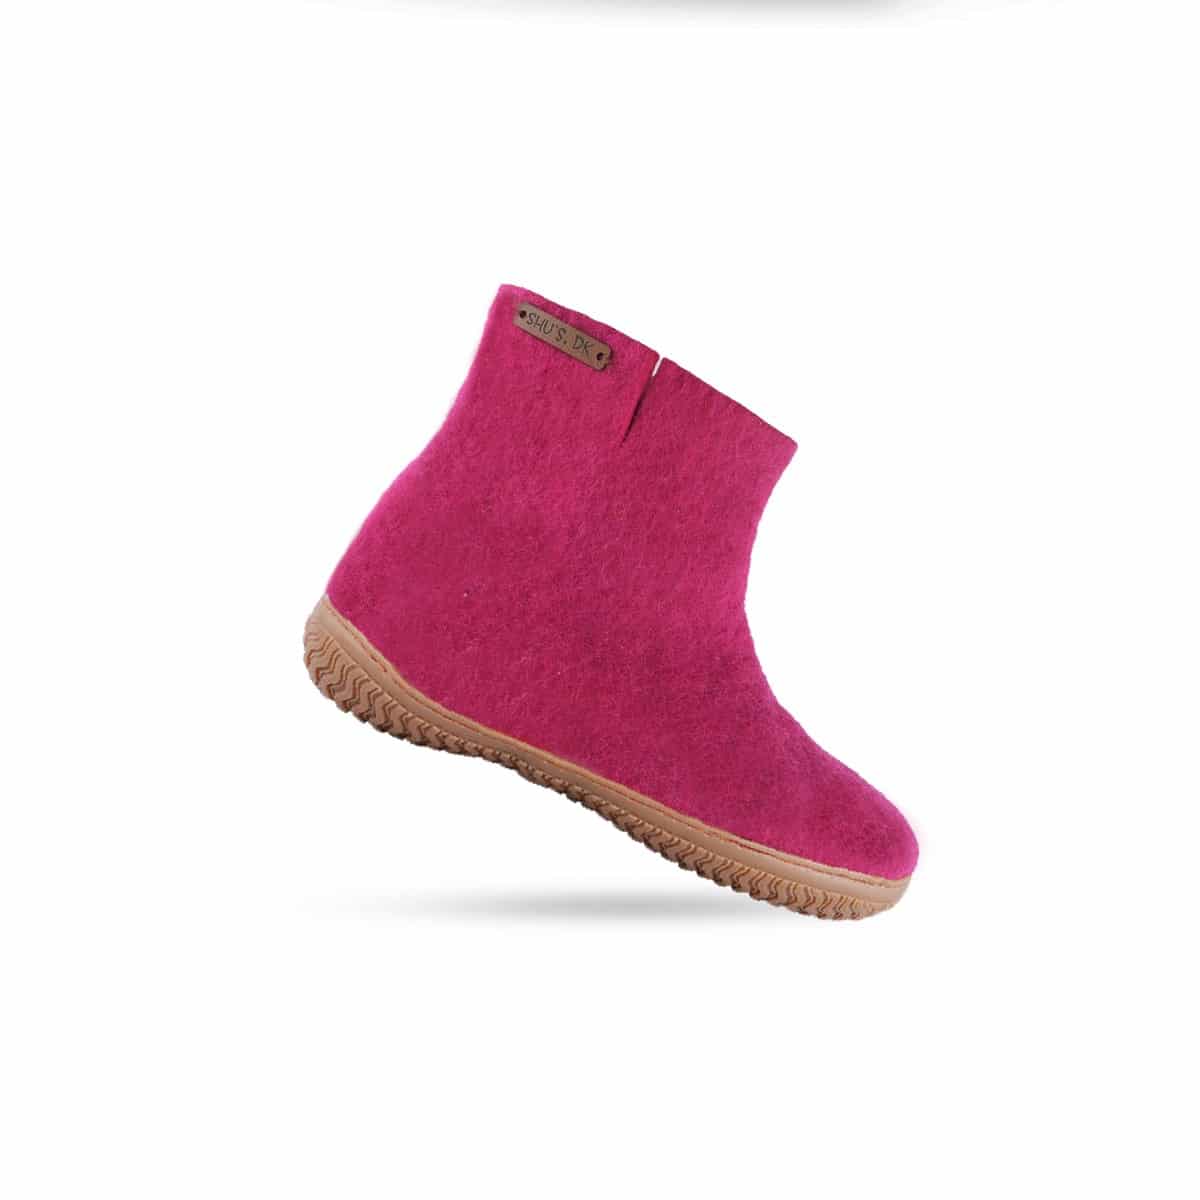 Billede af Uldstøvle (100% ren uld) Model Pink m/gummisål Dansk Design fra SHUS